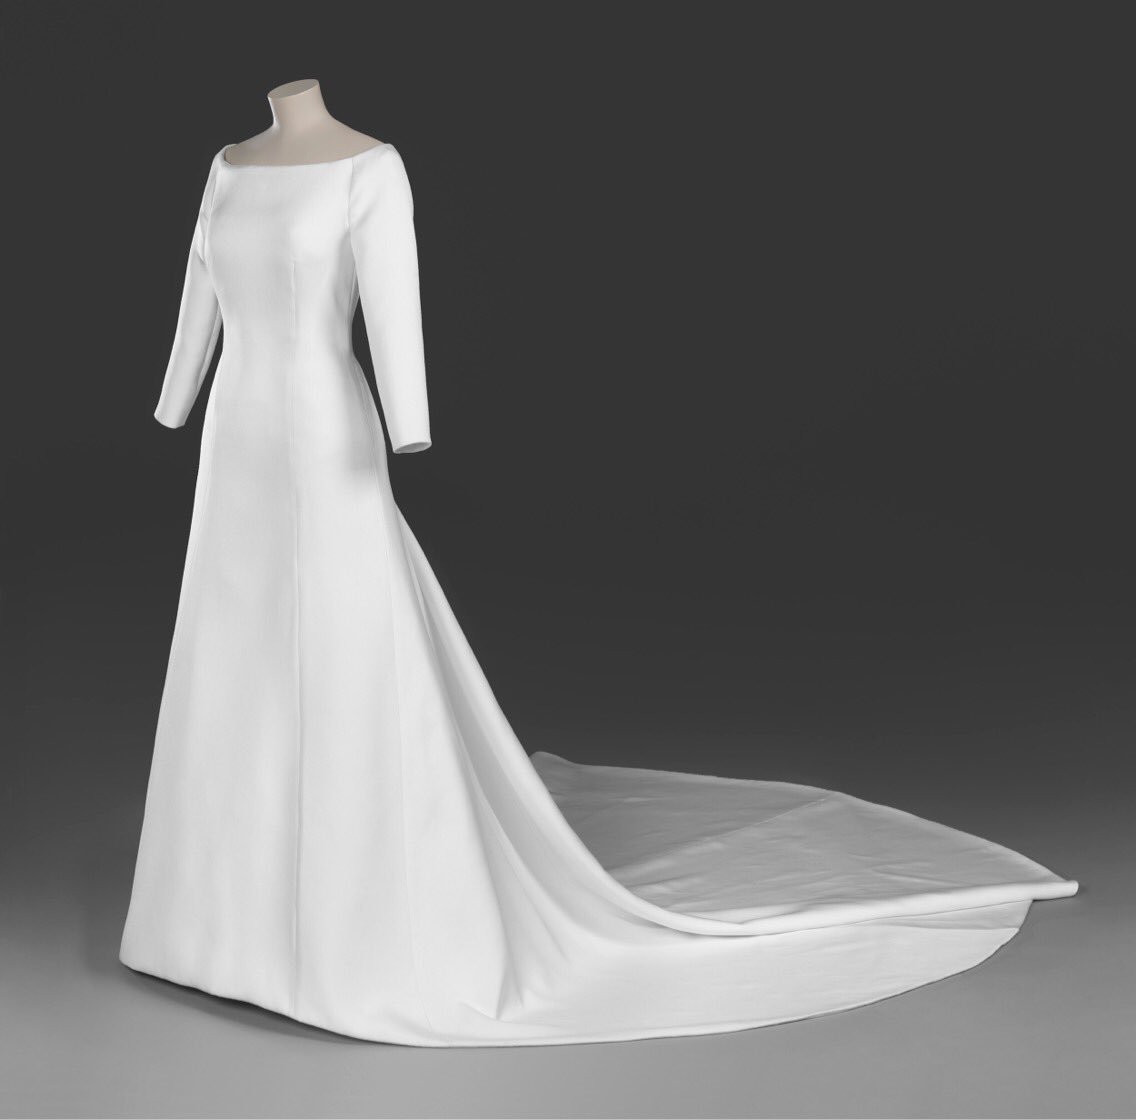 Меган Маркъл показва сватбената си рокля (Къде можем да я видим? + снимки от изложбата)